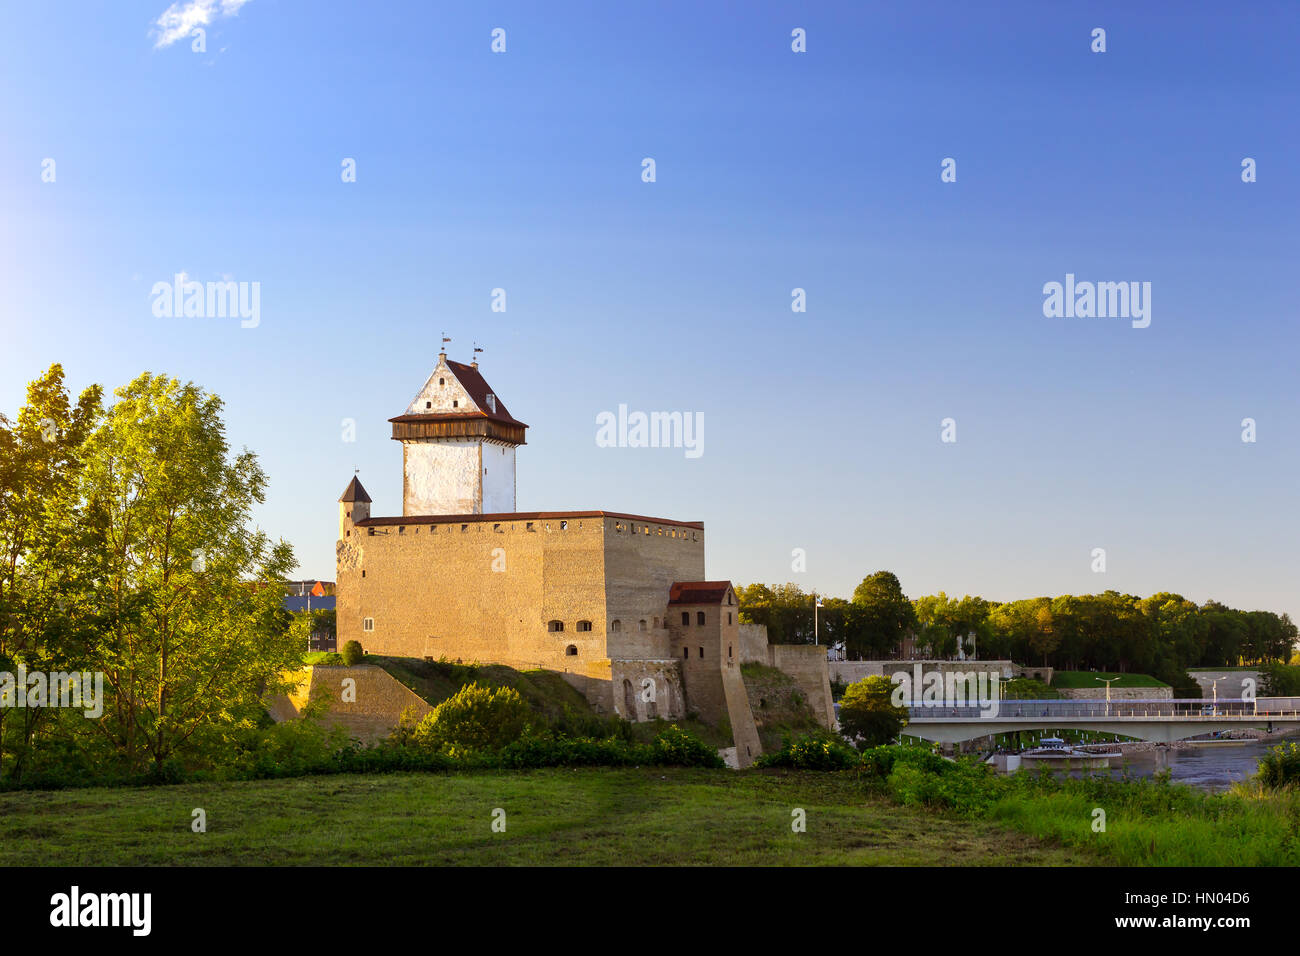 La forteresse de Narva - Herman château position sur banque de Narva. La fortification médiévale sur la frontière de l'État estonien. Hermanni linnus, l'Estonie, l'Unio Banque D'Images